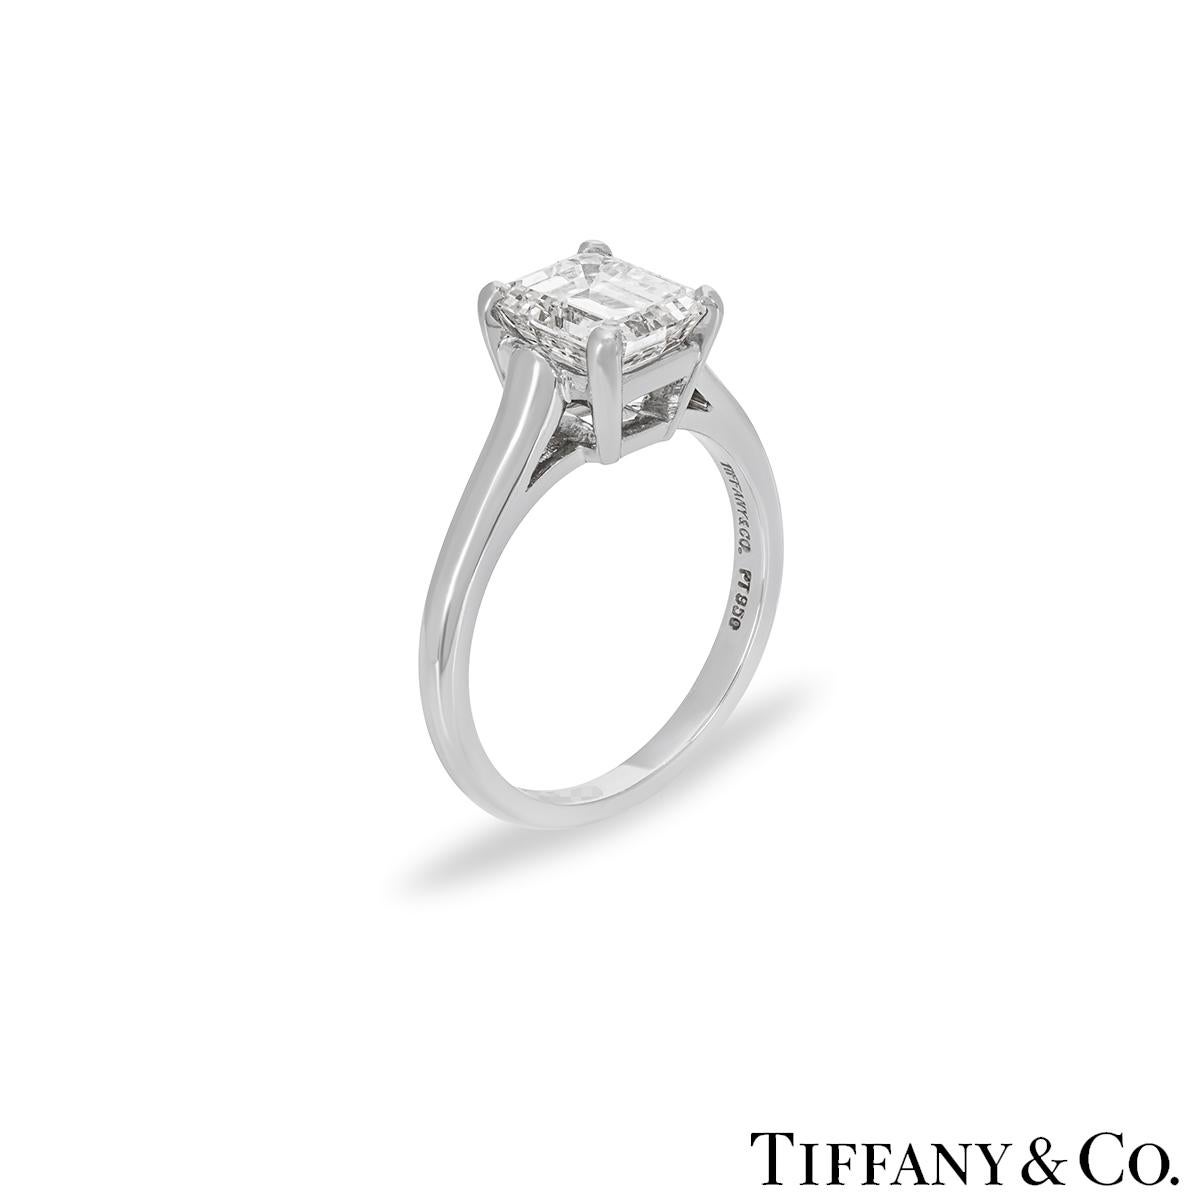 Ein atemberaubender Single Stone Diamantring aus Platin von Tiffany & Co. Der Solitär besteht aus einem Diamanten im Smaragdschliff mit einem Gewicht von 1,59 ct, Farbe E und Reinheit VS1, der in einer vierzinkigen Fassung gefasst ist. Der 2mm Ring